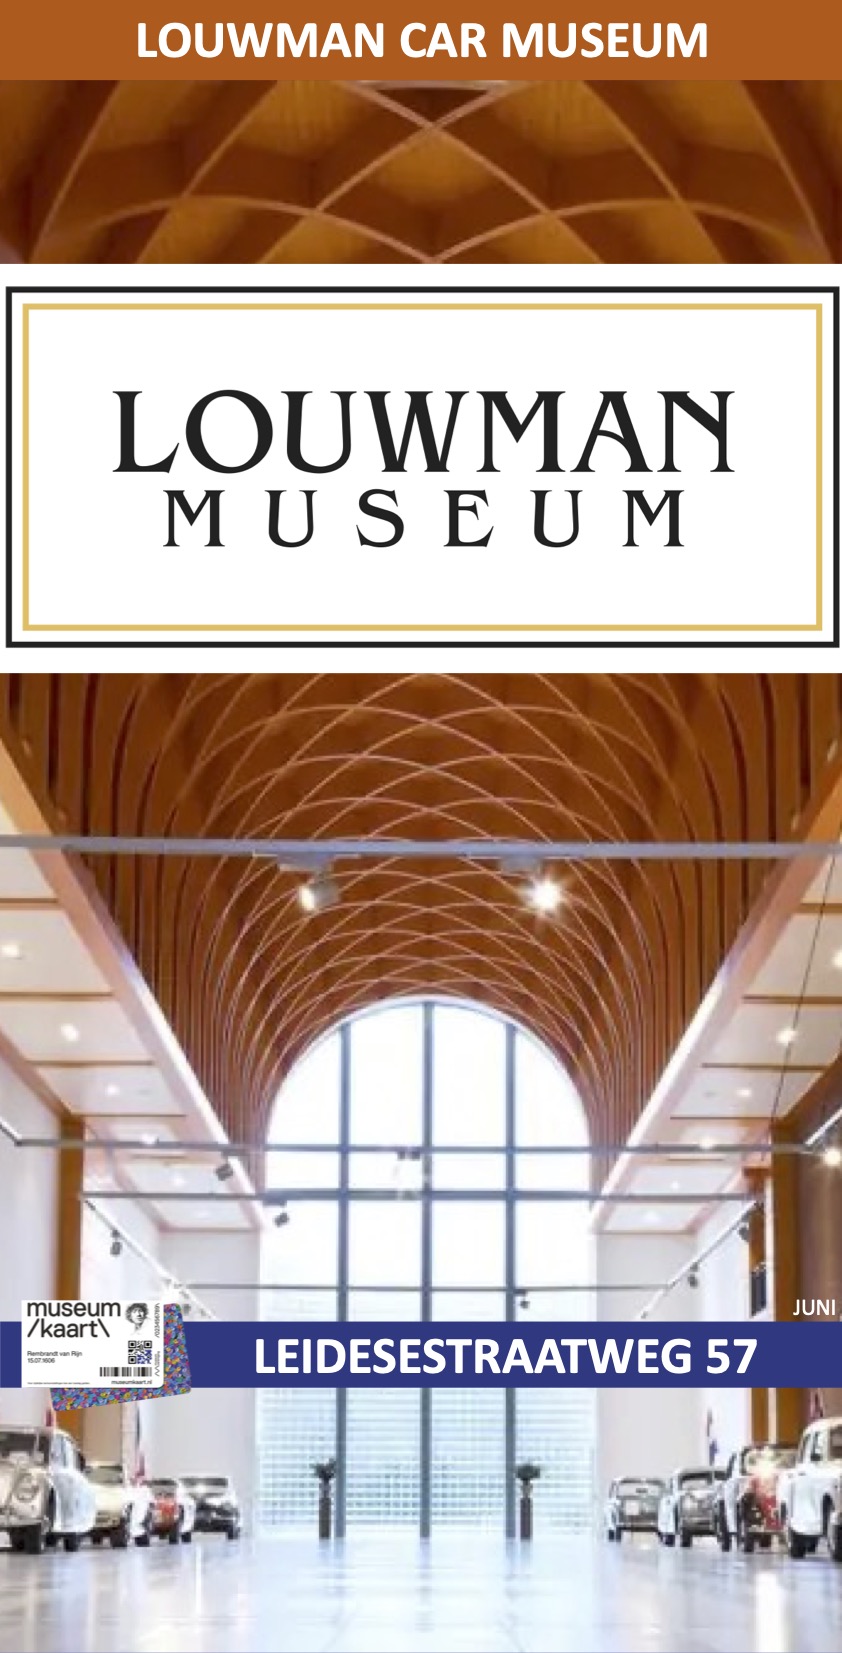 Louwman Automuseum Wassenaar Museumkaart juni